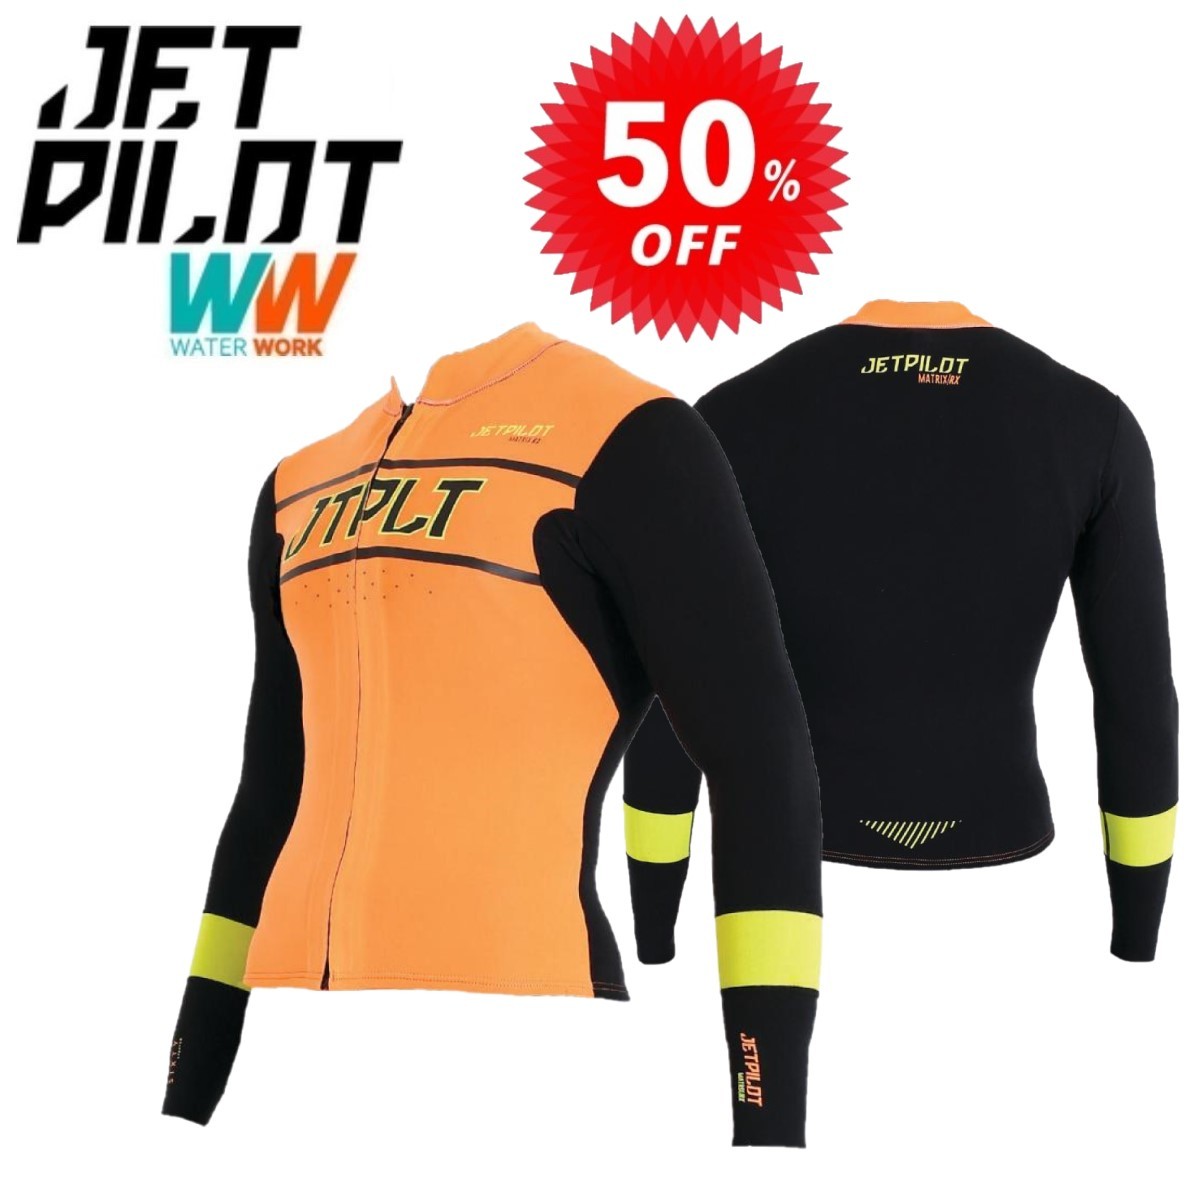 ジェットパイロット ウェットスーツ セール 50%オフ 送料無料 RX レース ジャケット JA20156 ブラック/オレンジ XL